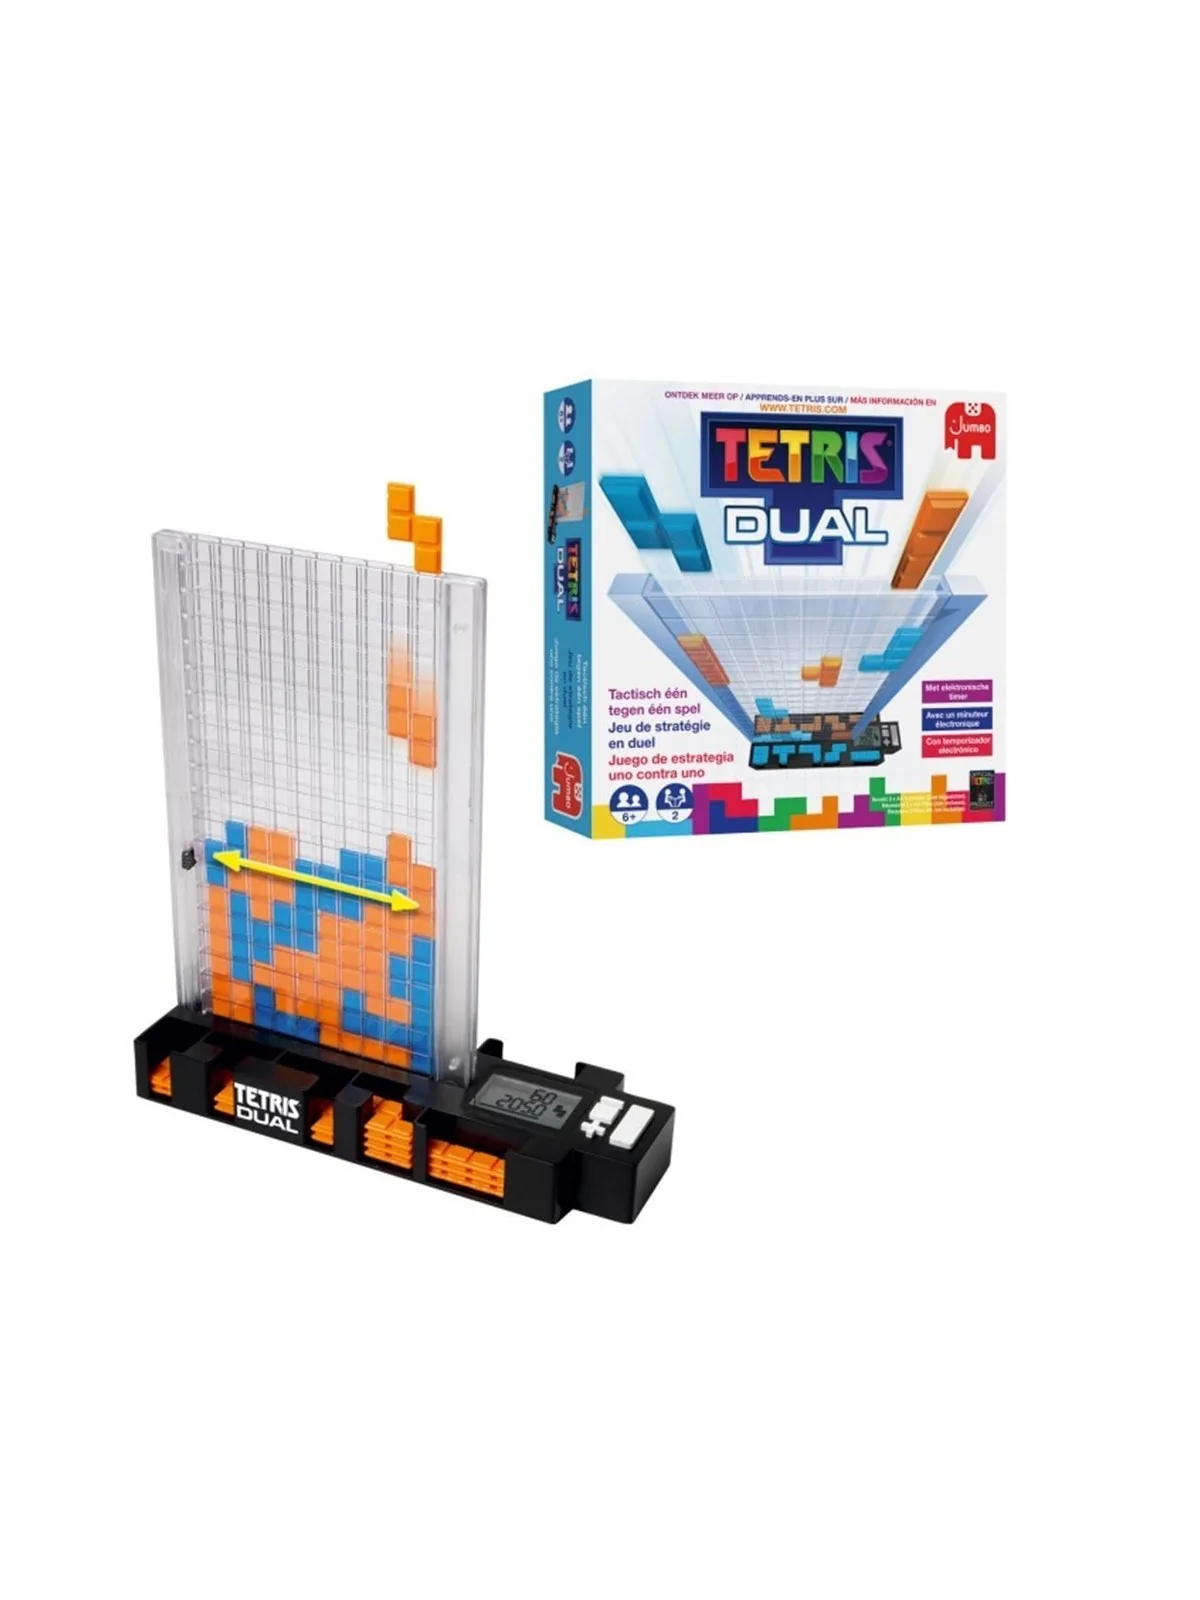 Comprar Juego mesa tetris dual pegi 6 barato al mejor precio 30,57 € d